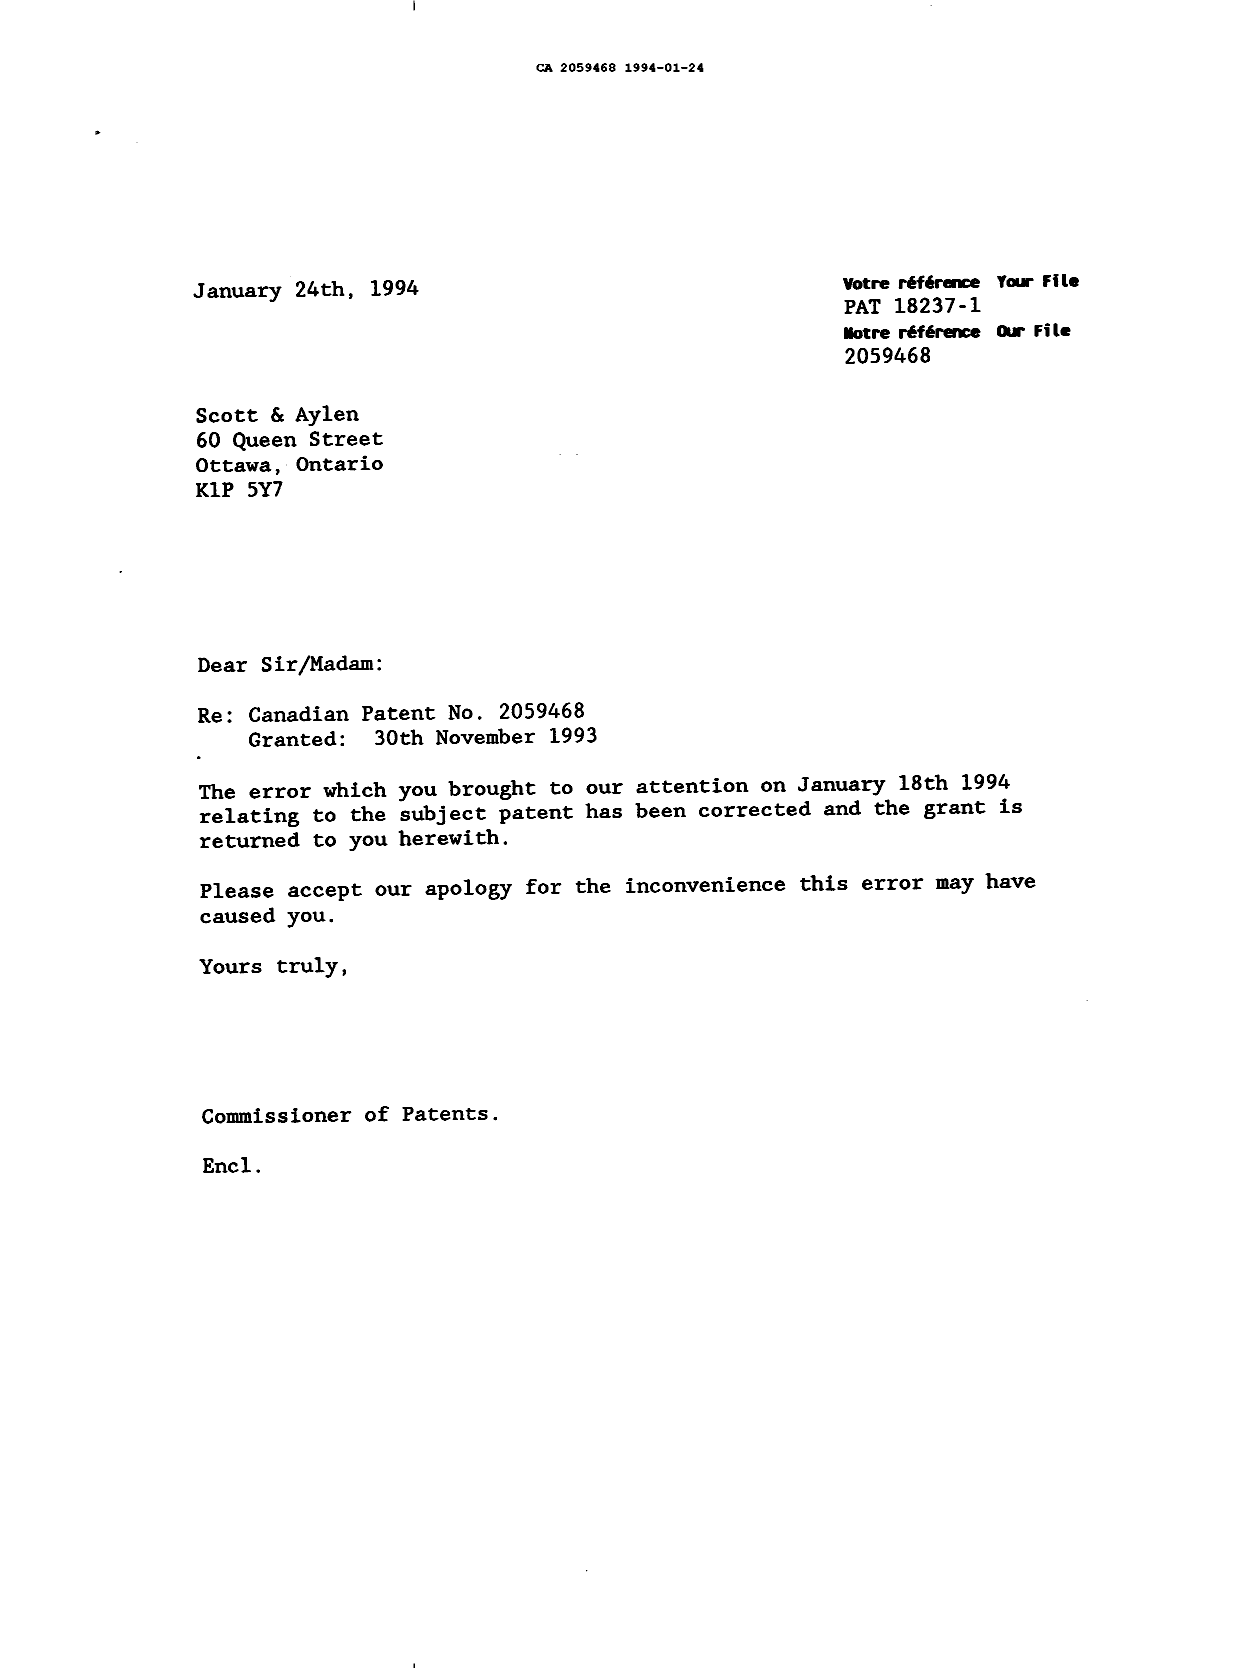 Document de brevet canadien 2059468. Correspondance 19931224. Image 1 de 1